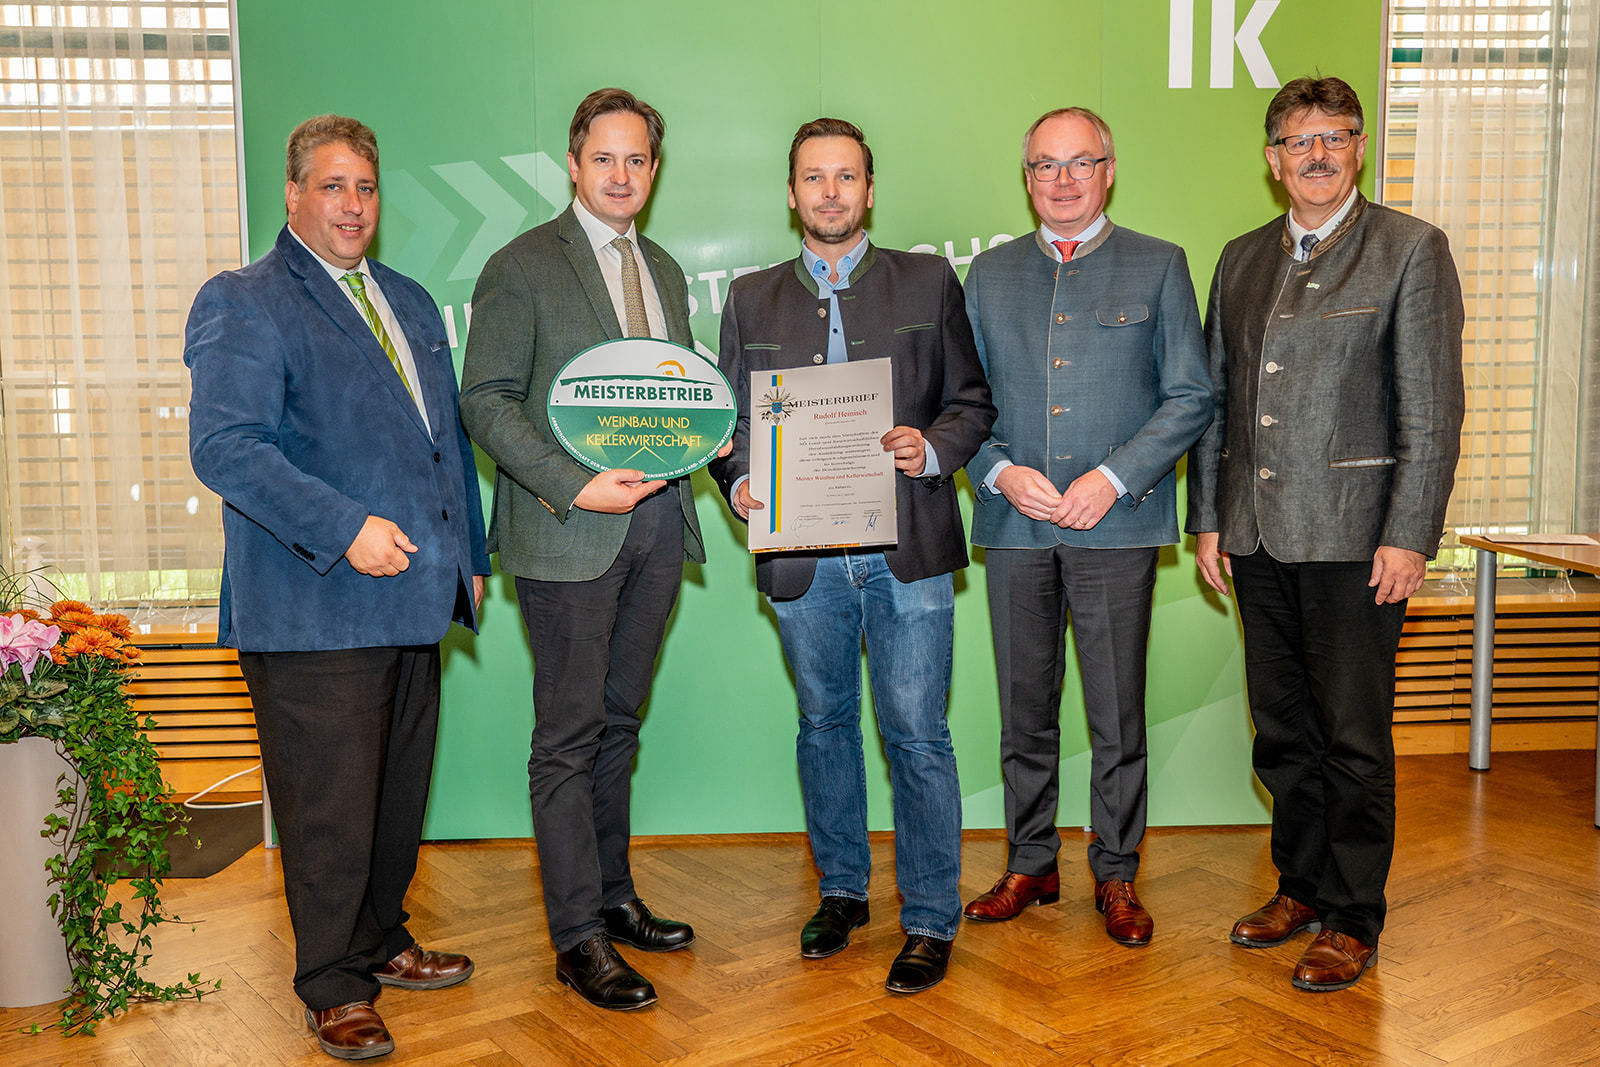 111 neue niederösterreichische Meister der Land- und Forstwirtschaft bei der Meisterbriefverleihung ausgezeichnet